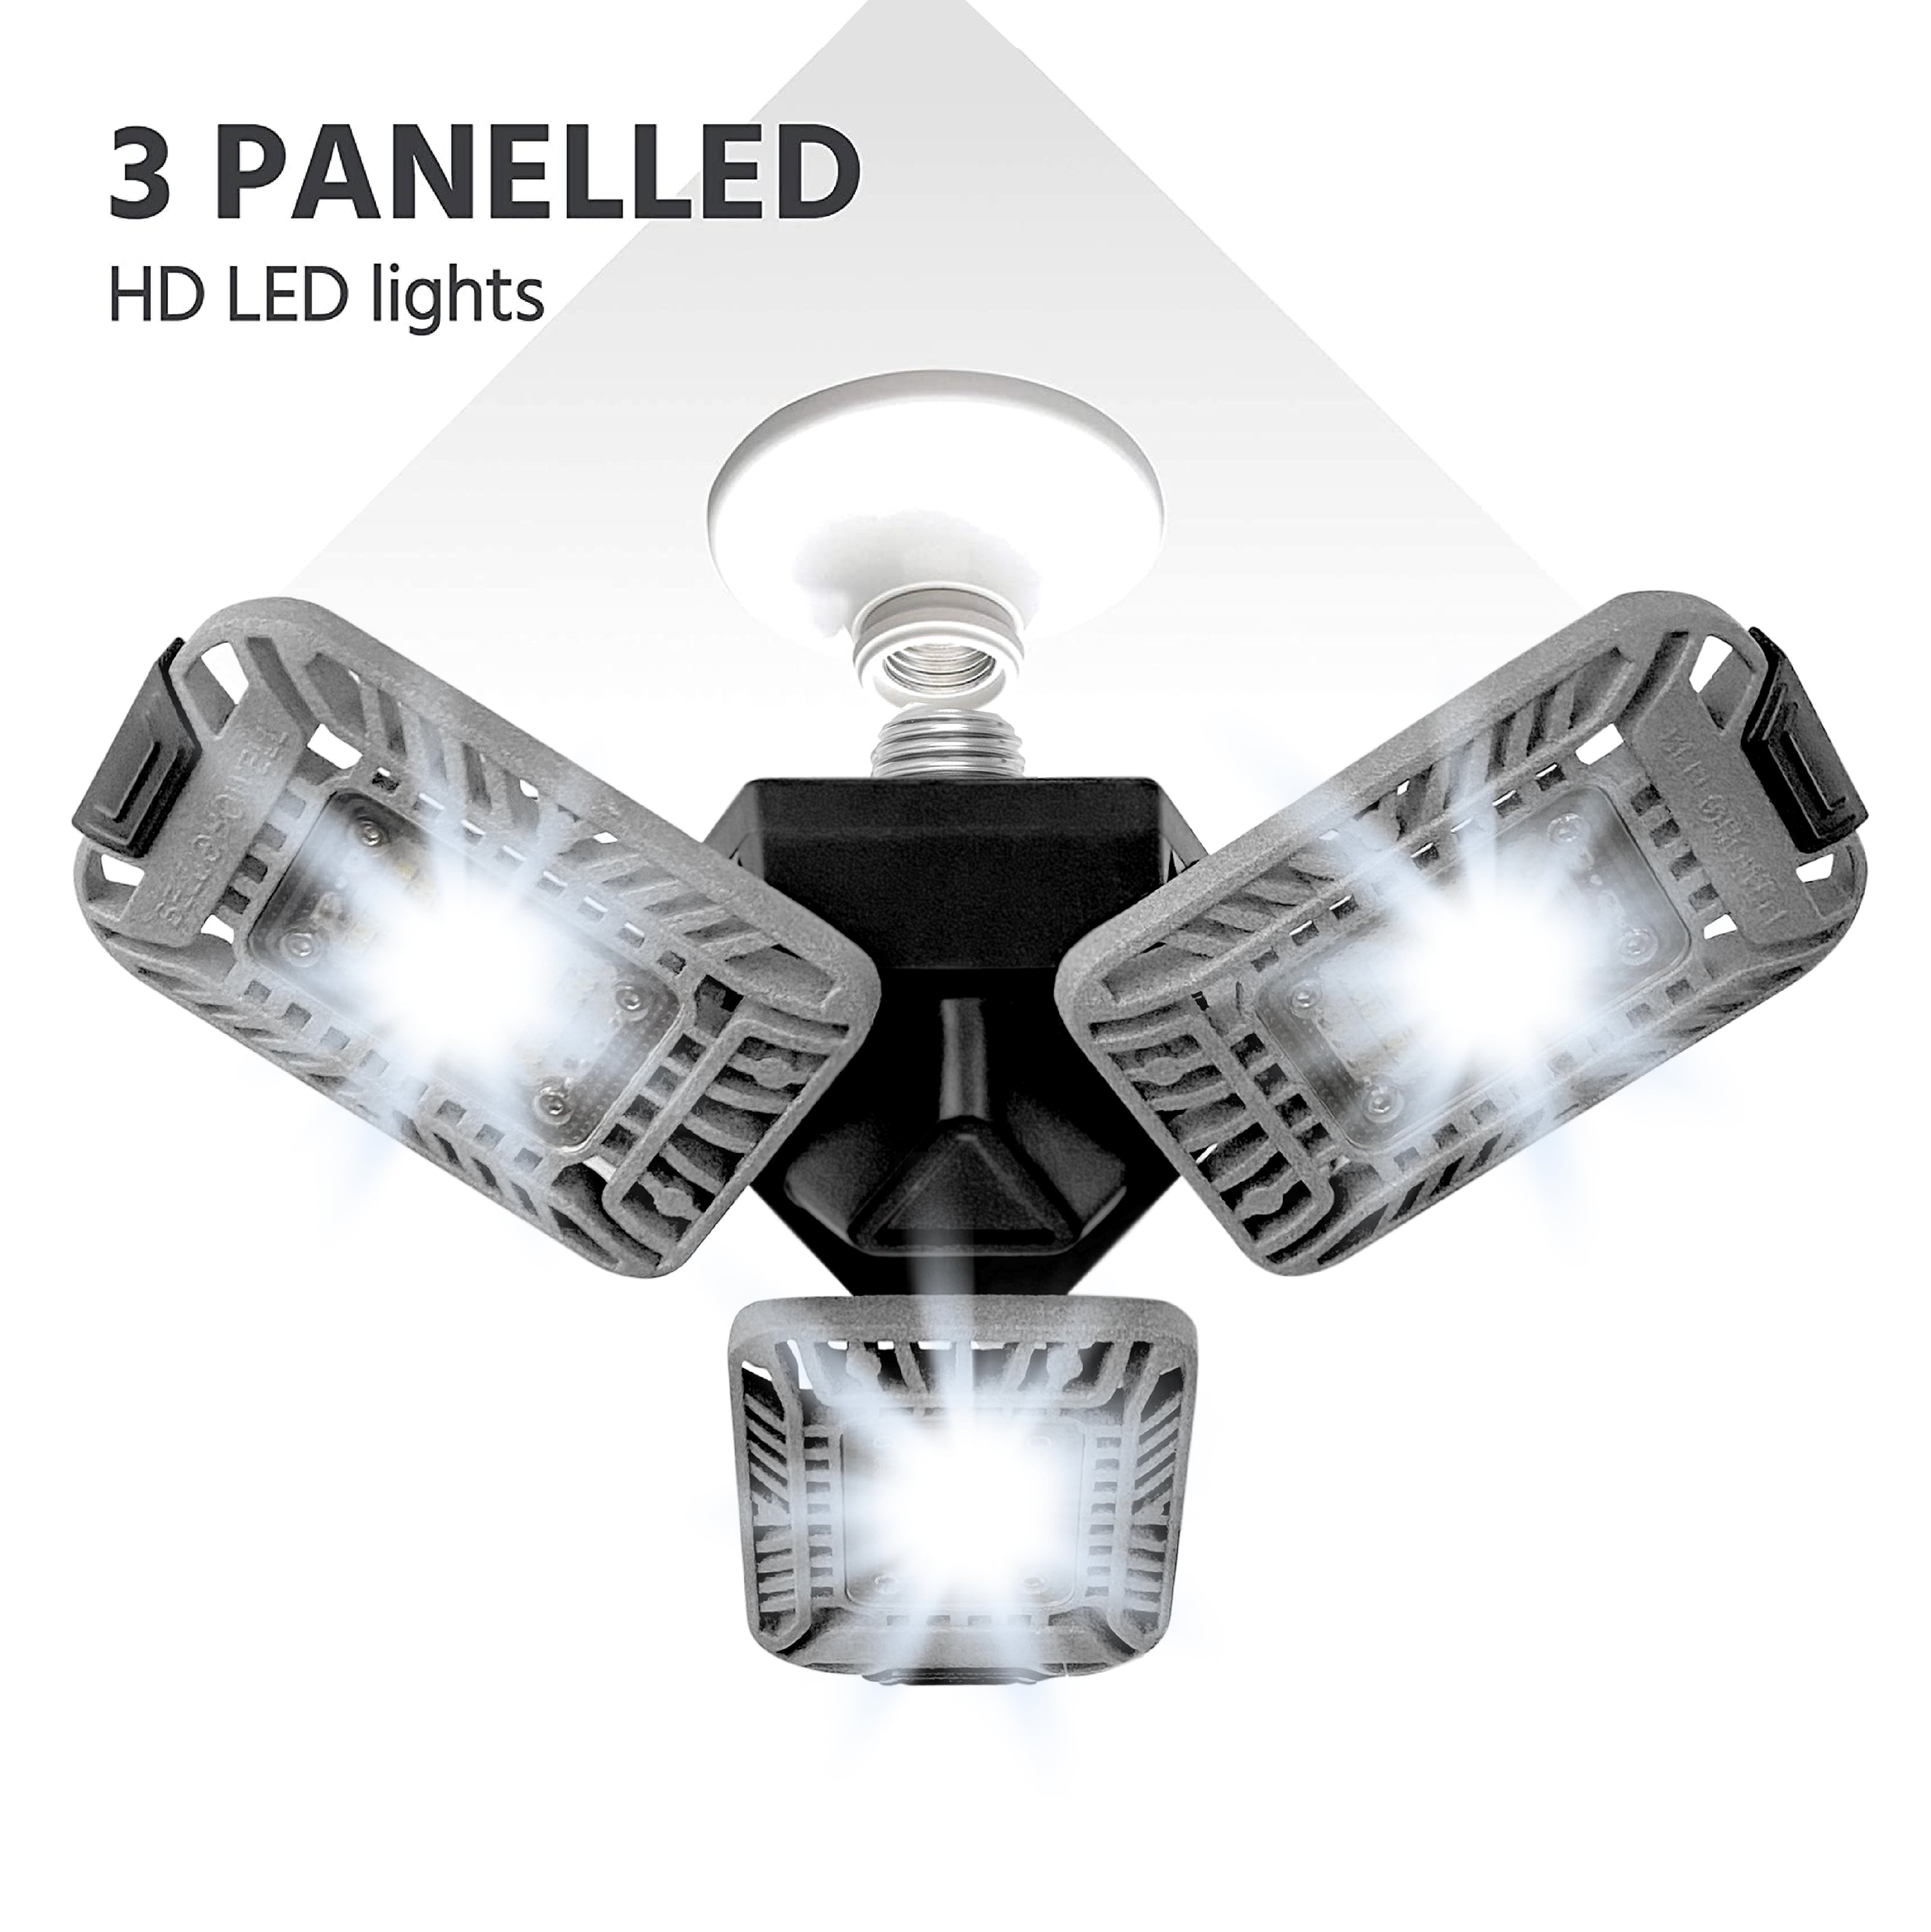 Bell+Howell  Triburst Pro Deluxe 5500 Lumen Multi-Directional LED Socket Light